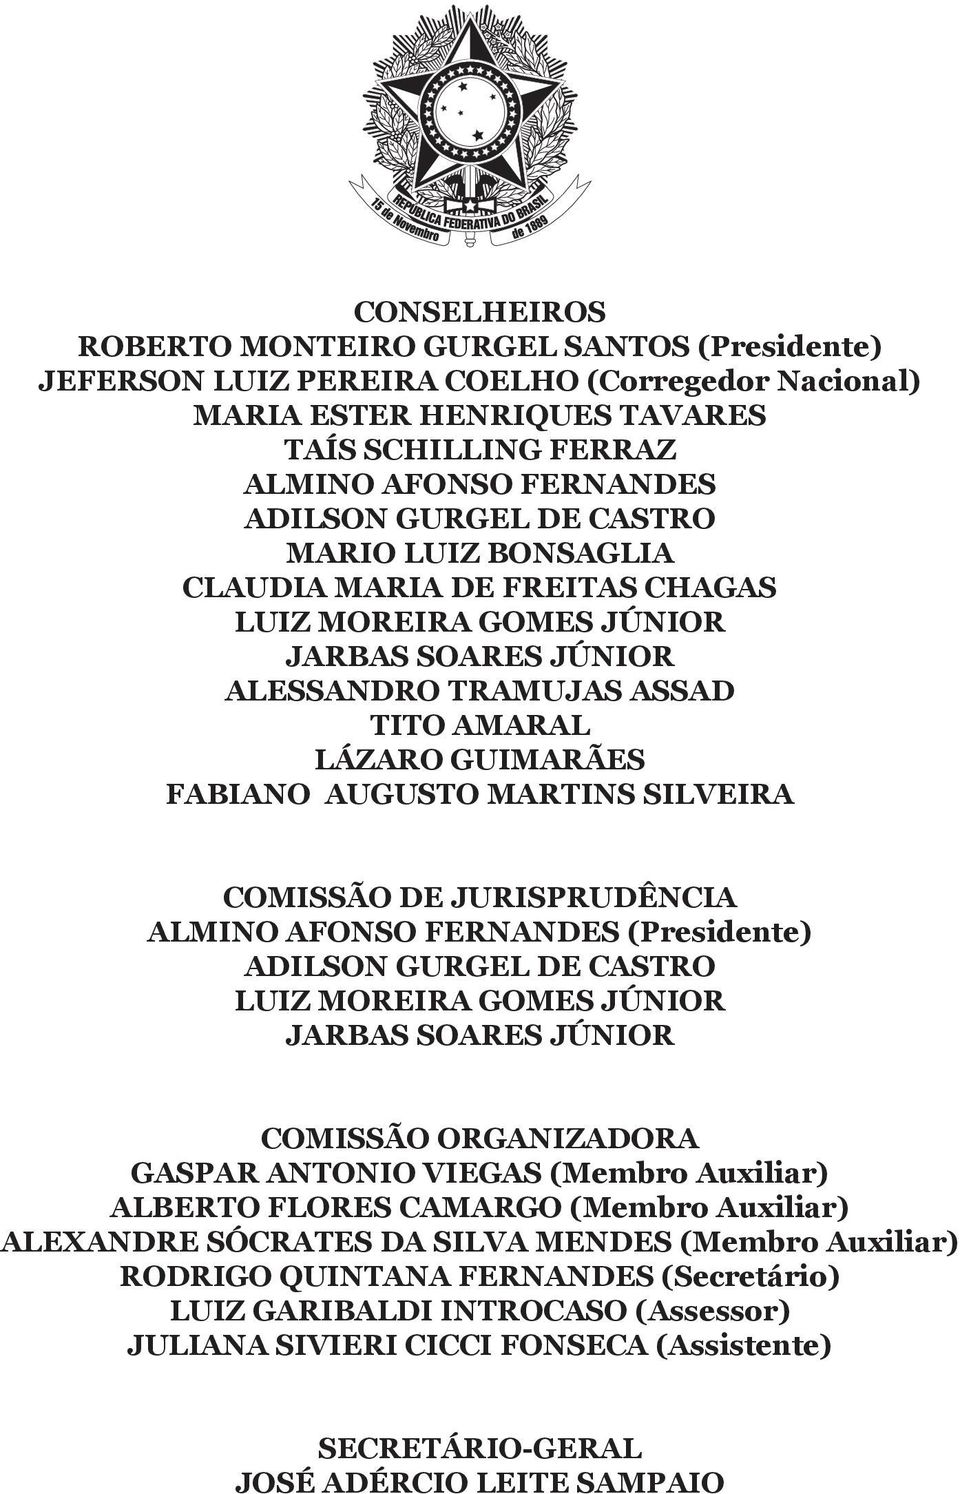 COMISSÃO DE JURISPRUDÊNCIA ALMINO AFONSO FERNANDES (Presidente) ADILSON GURGEL DE CASTRO LUIZ MOREIRA GOMES JÚNIOR JARBAS SOARES JÚNIOR COMISSÃO ORGANIZADORA GASPAR ANTONIO VIEGAS (Membro Auxiliar)